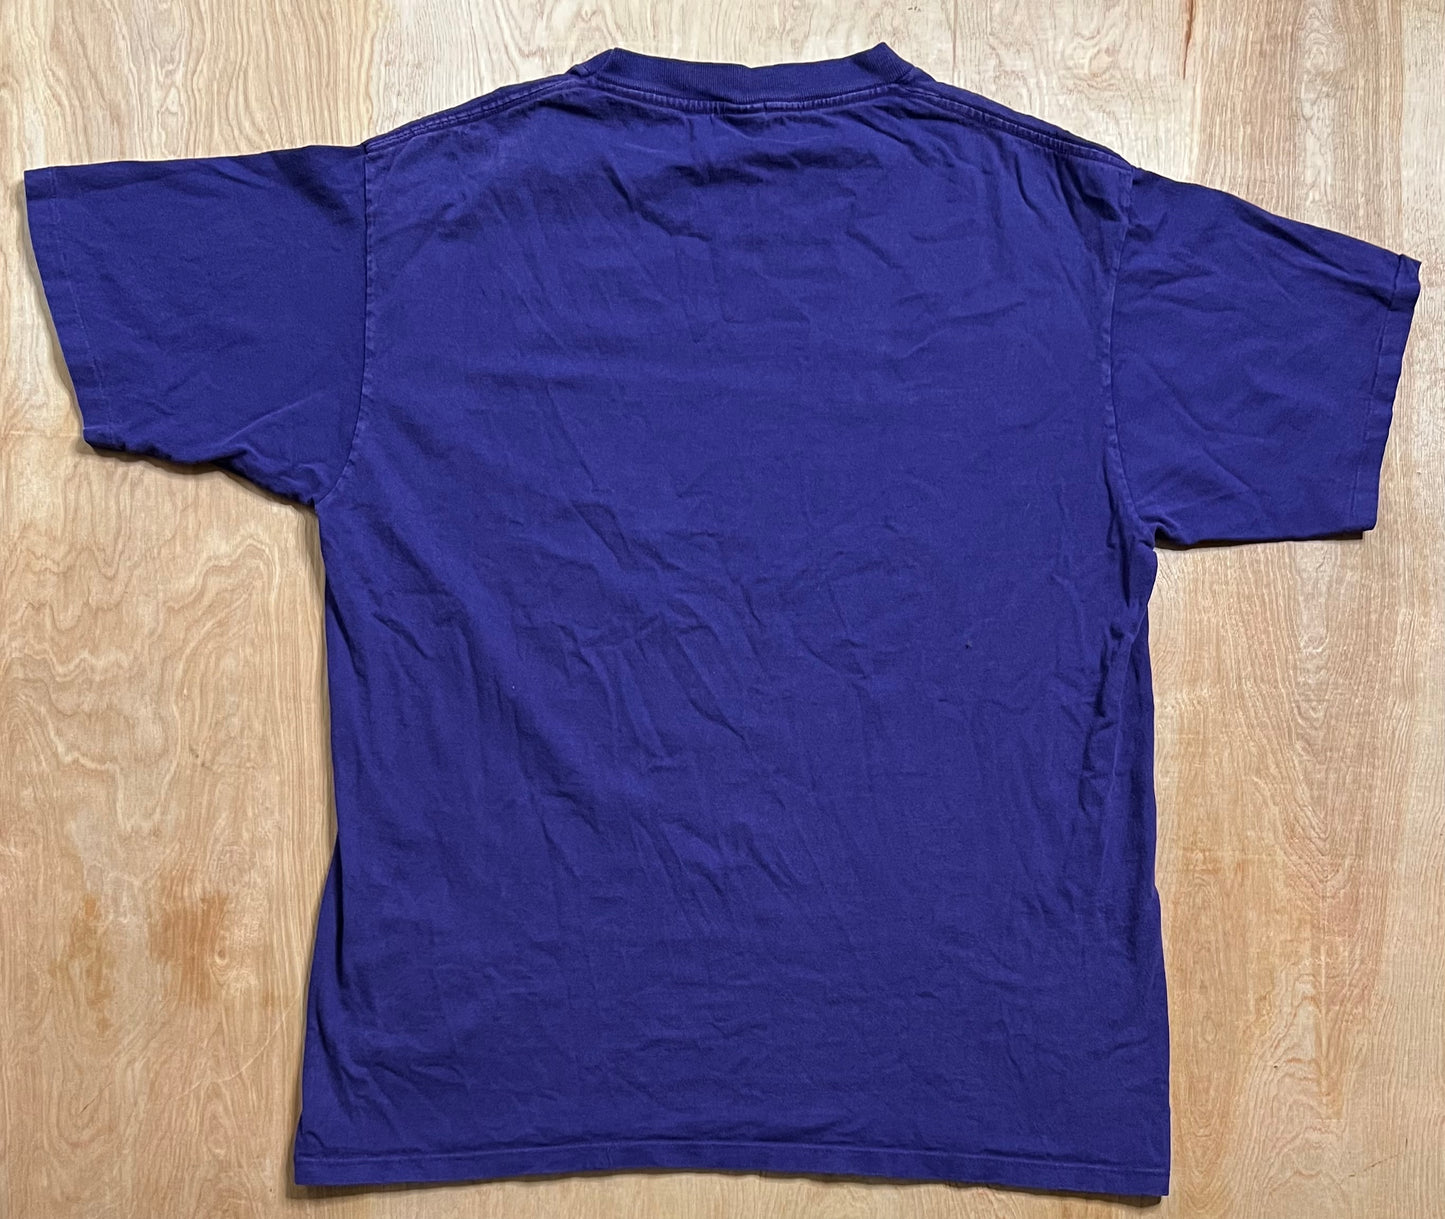 1990 Minnesota State Single Stitch T-Shirt